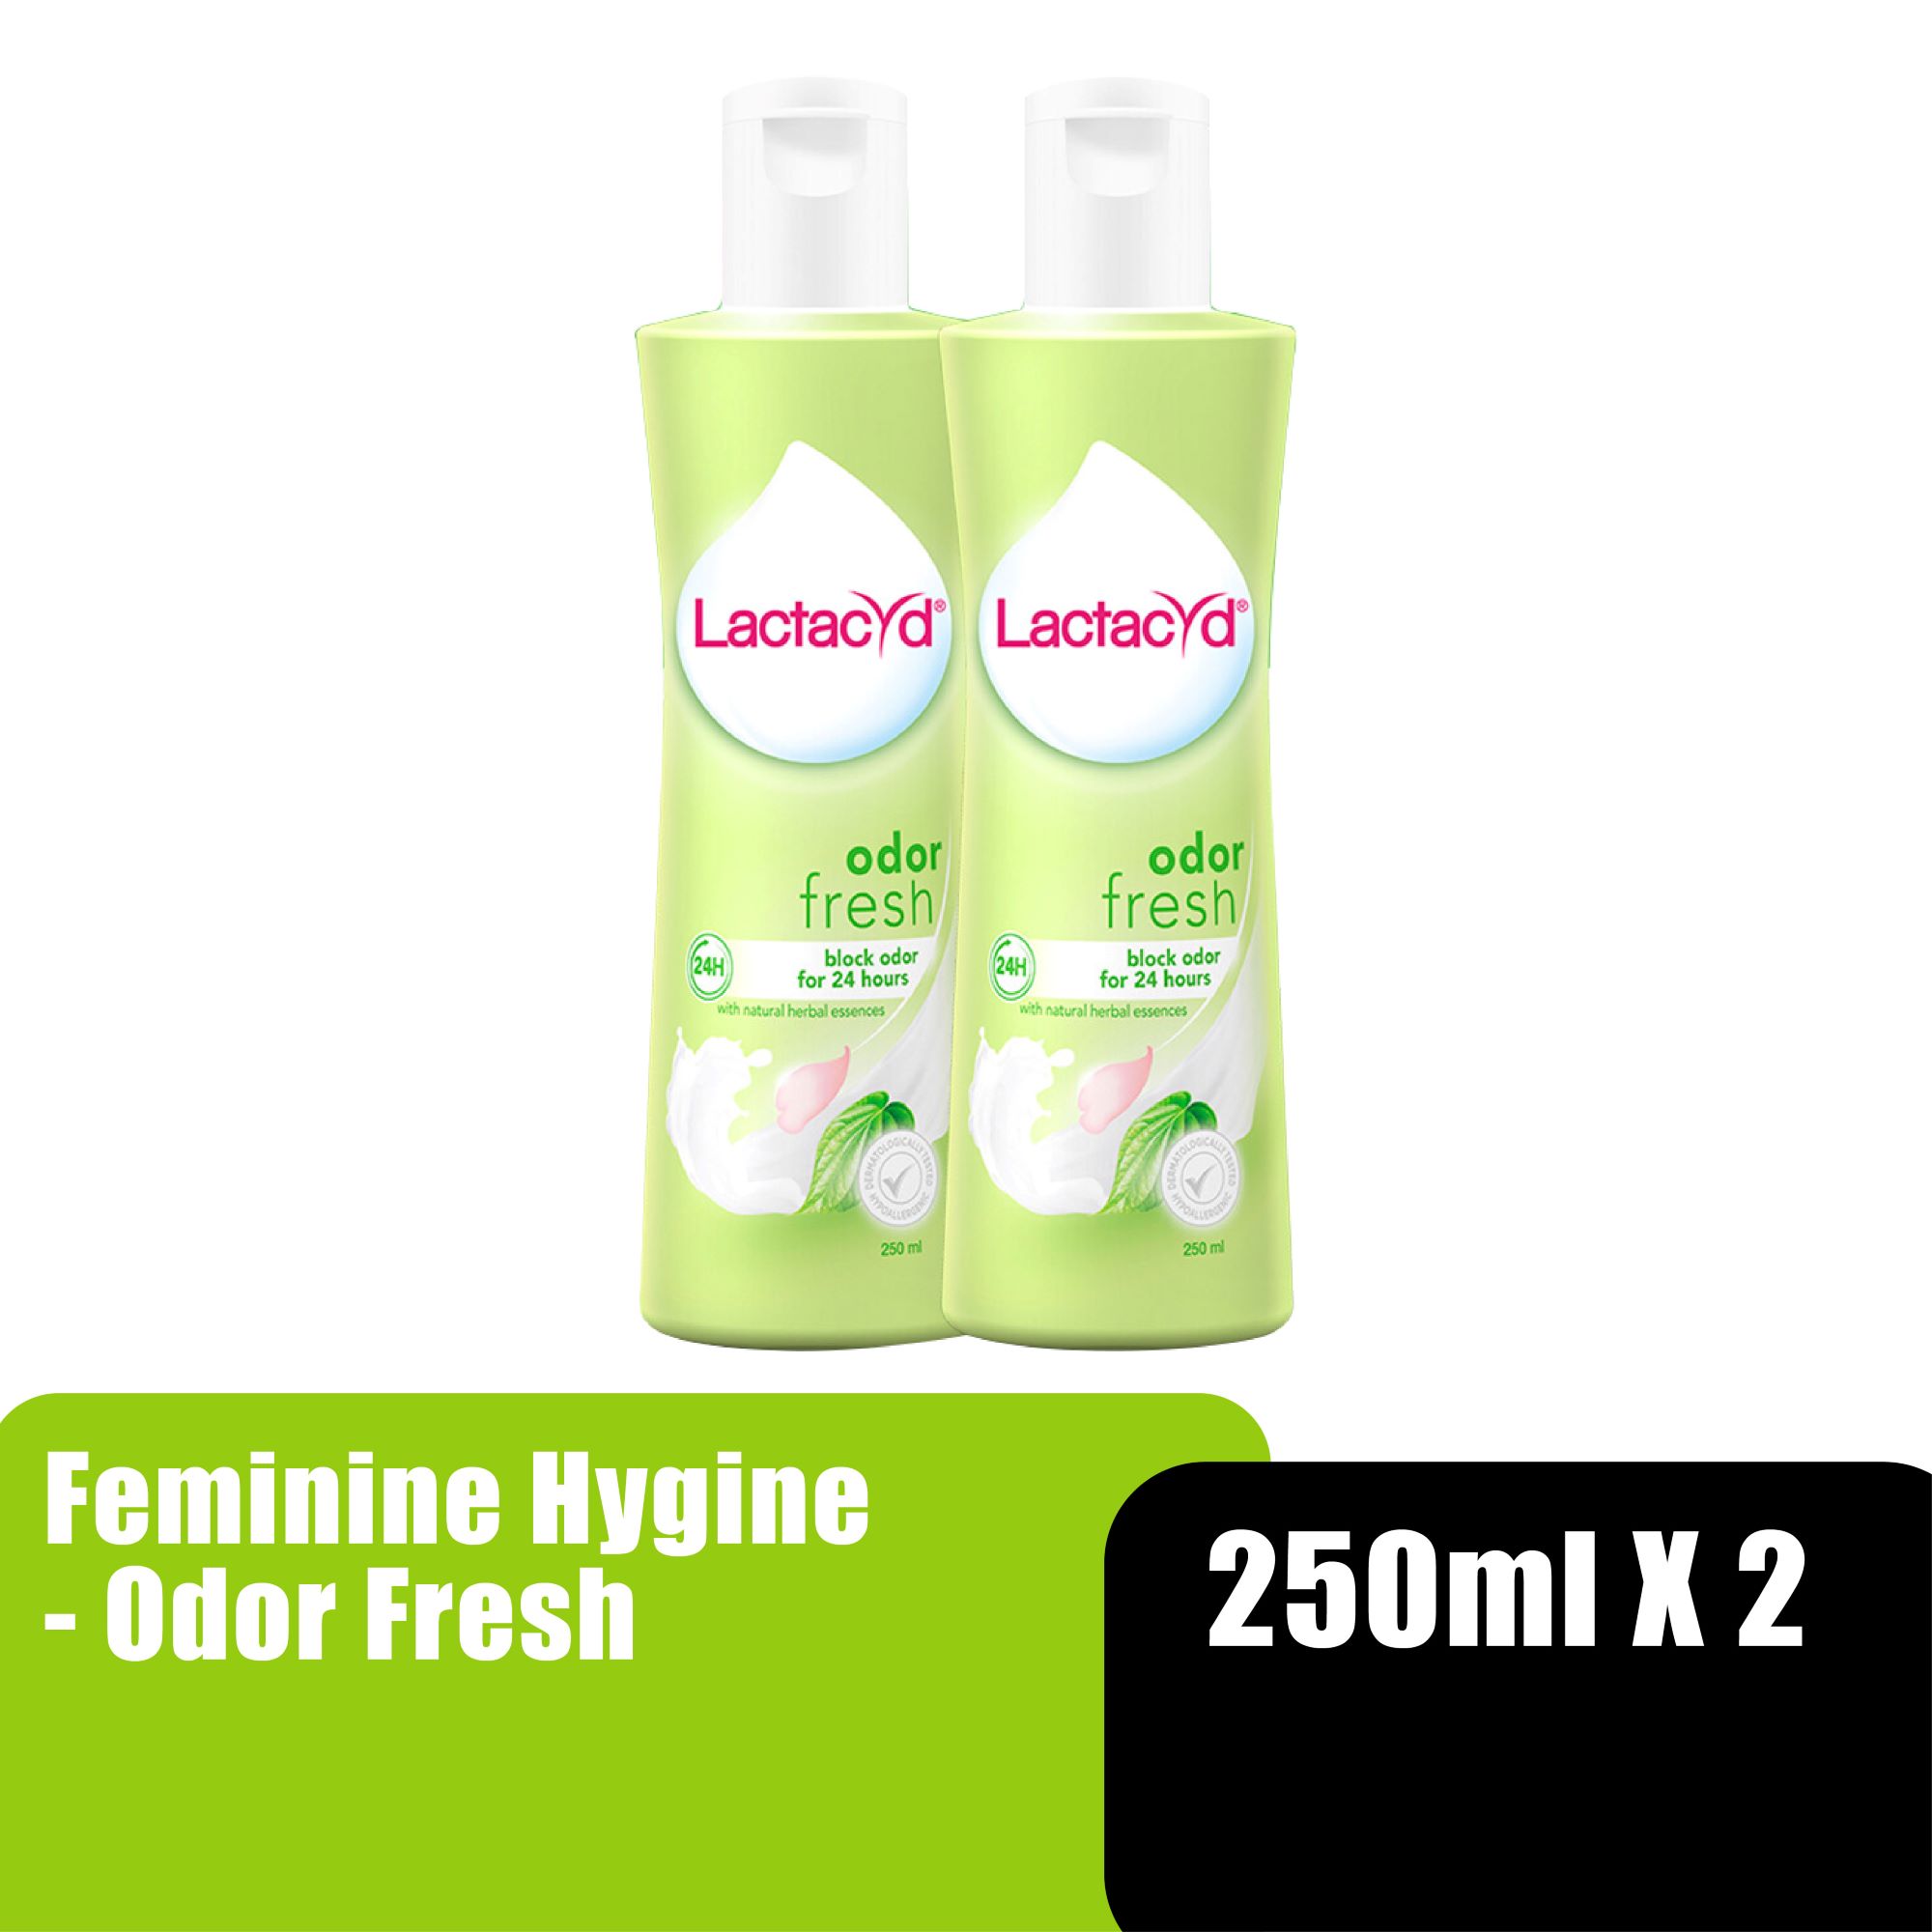 LACTACYD FEMININE HYGINE 250ML X 2 - ODOR FRESH (NEW)